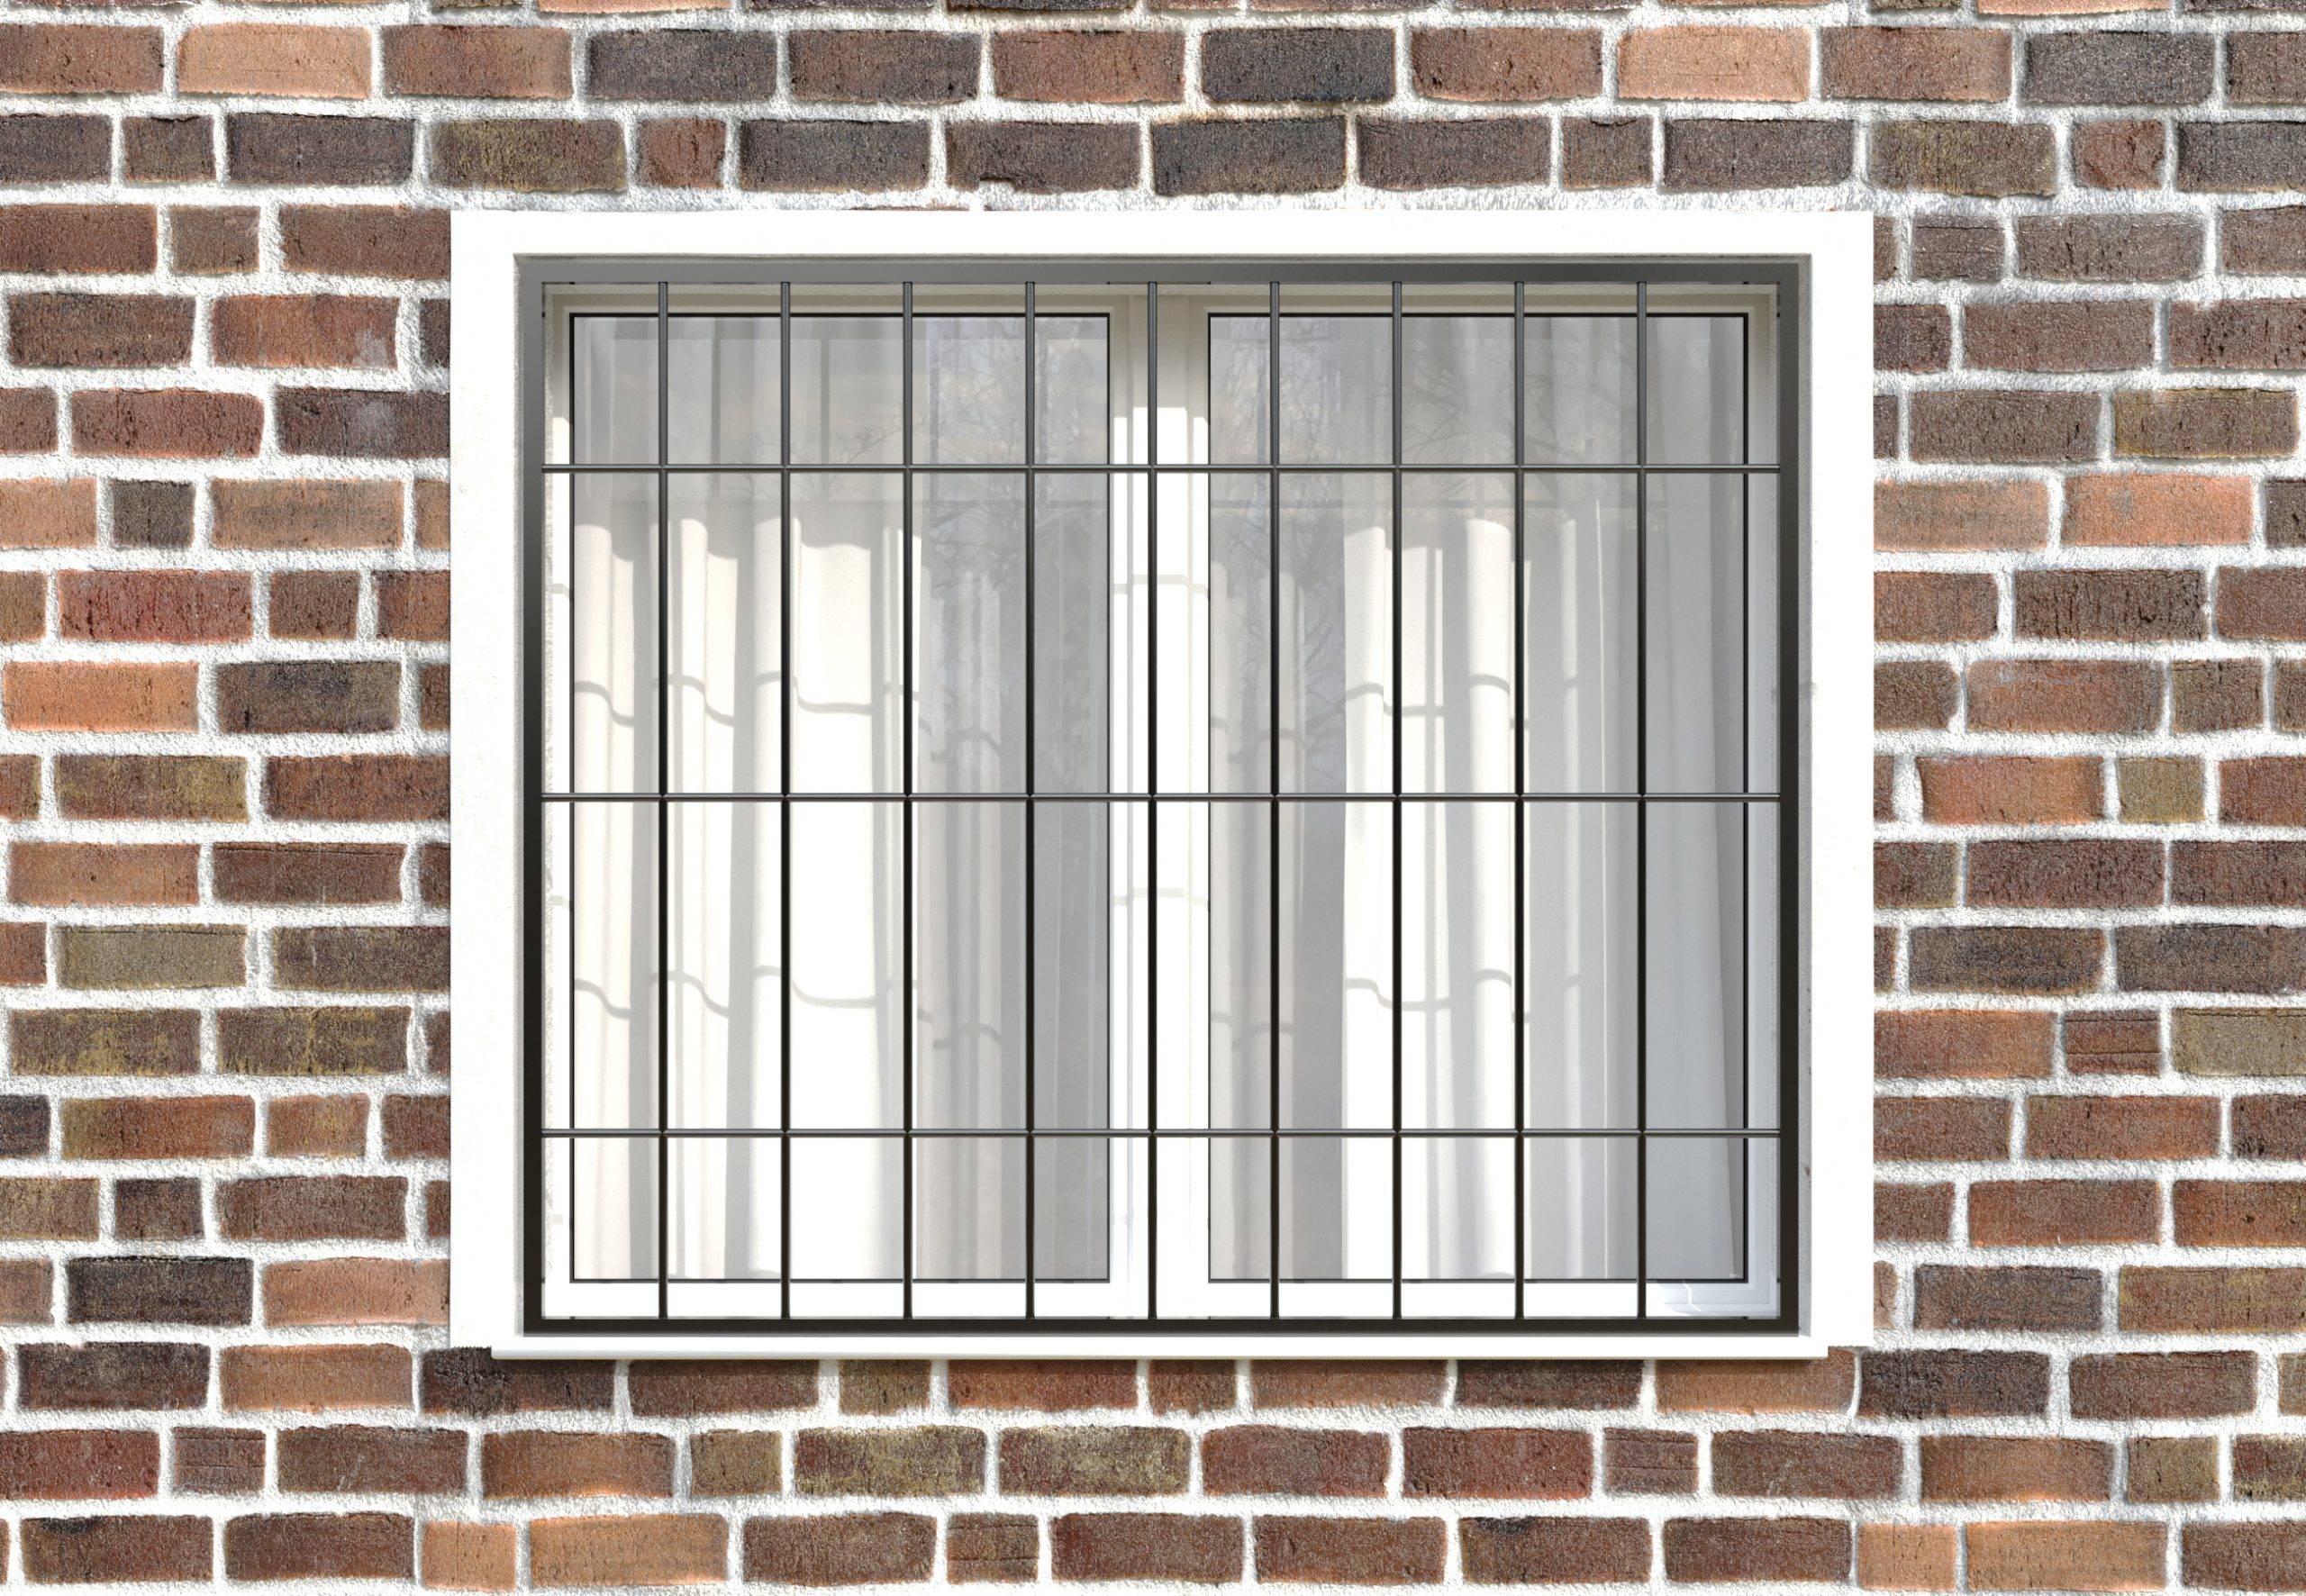 Как сделать решётки на окна первого этажа? Обзор и типы решёток и материалы их изготовления - Обзор